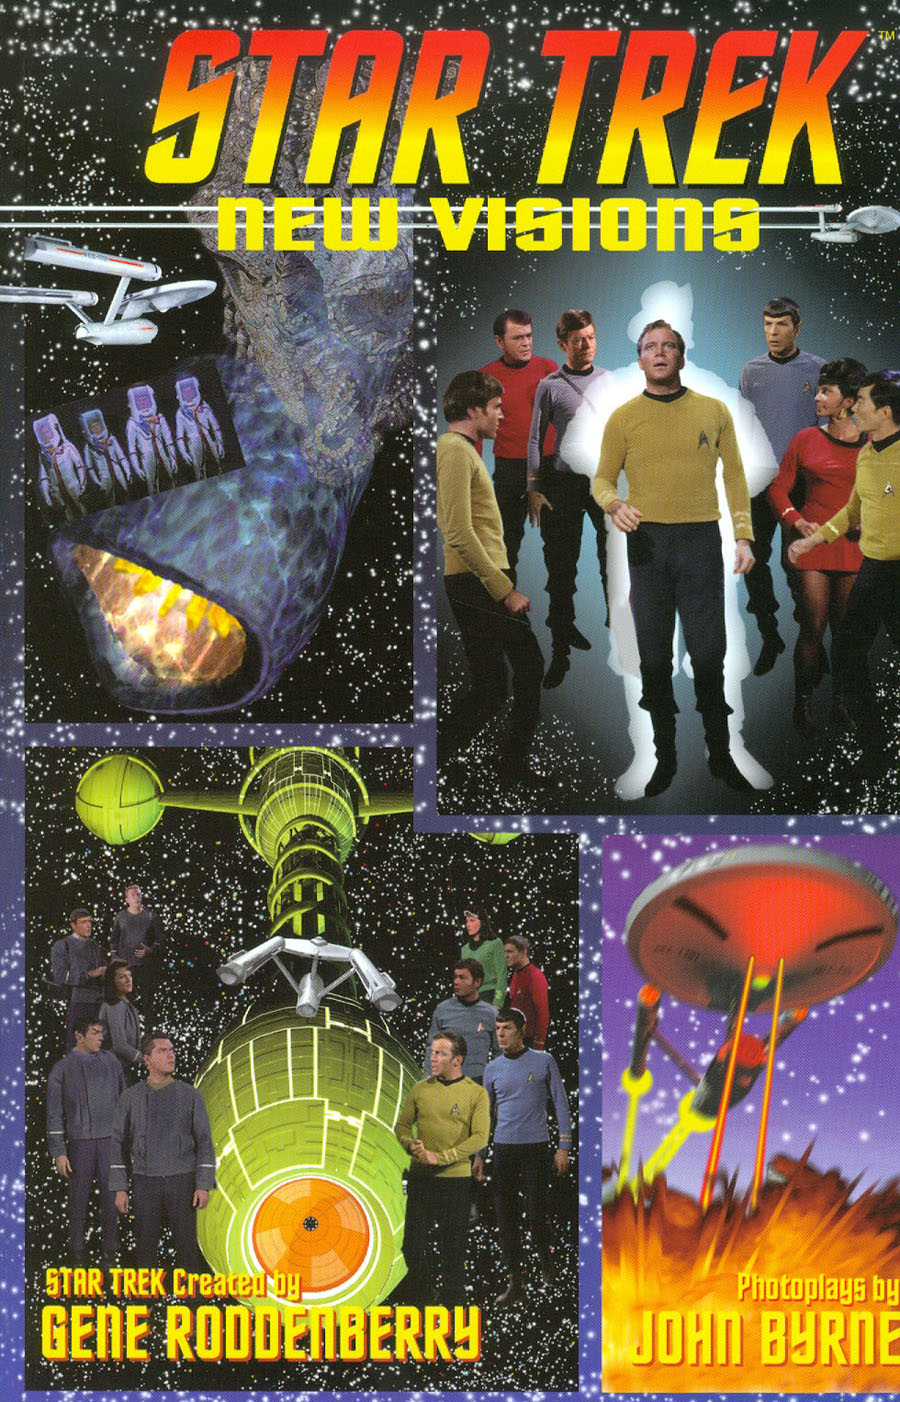 Star Trek New Visions Vol 2 TP